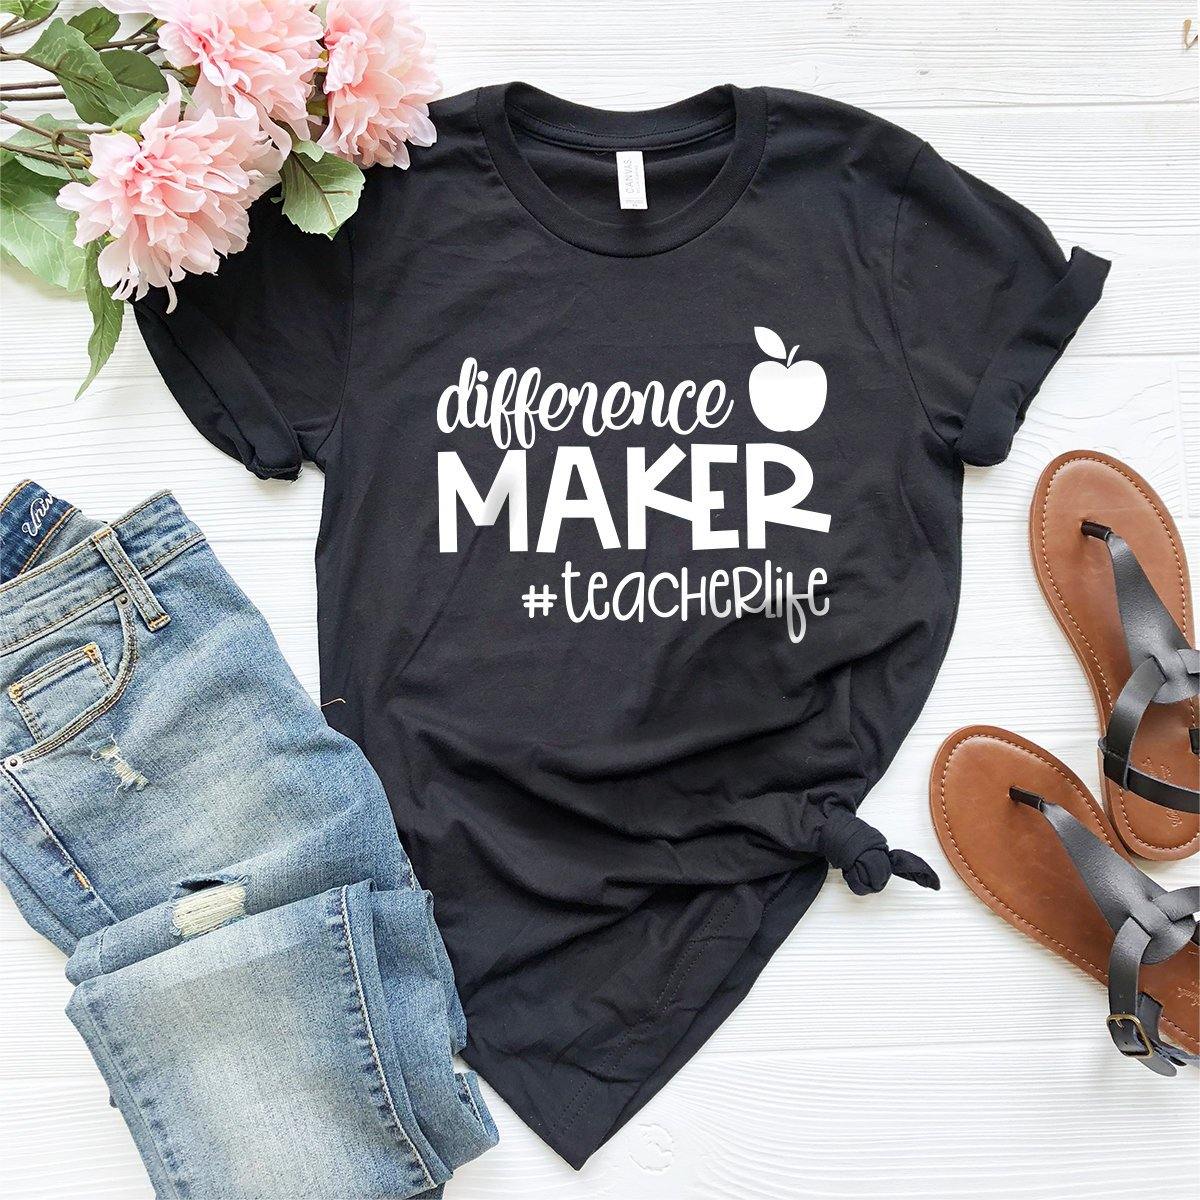 Funny Teacher Life Shirt, Educator T-Shirt, Difference Maker Teacher Life Shirt, Gift For Best Teacher, Teacher Appreciation Shirt - Fastdeliverytees.com